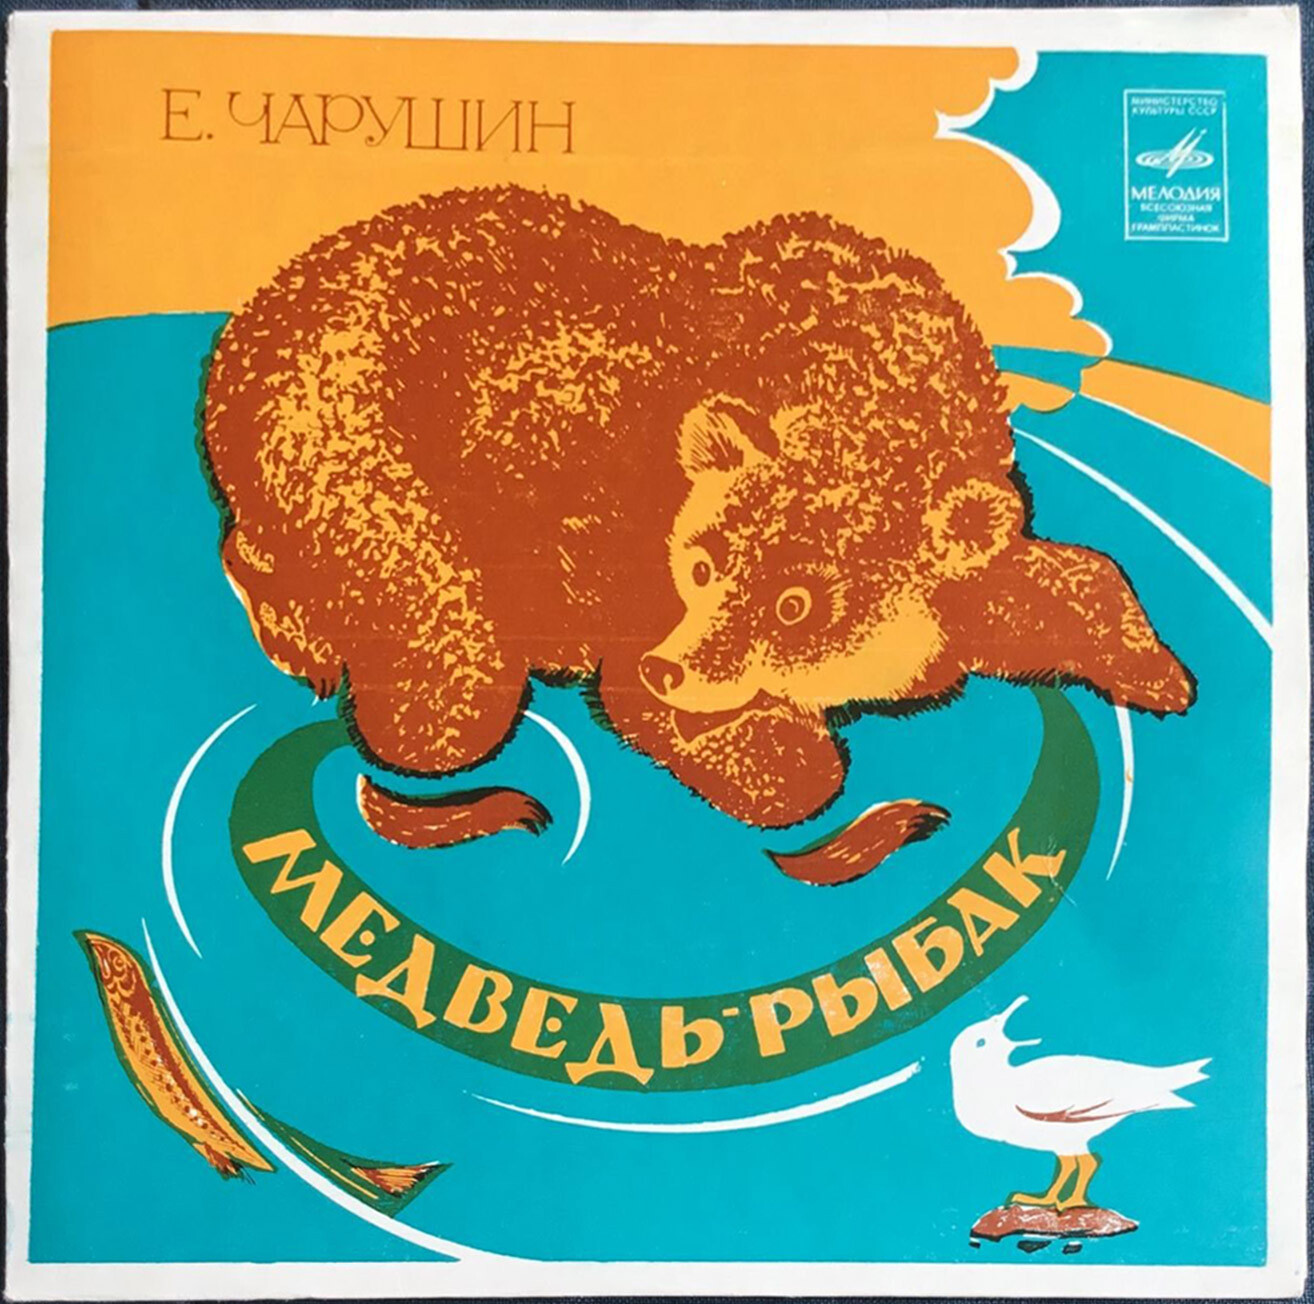 Е. ЧАРУШИН (1901–1965): «Медведь-рыбак», рассказ — читает М. Яншин